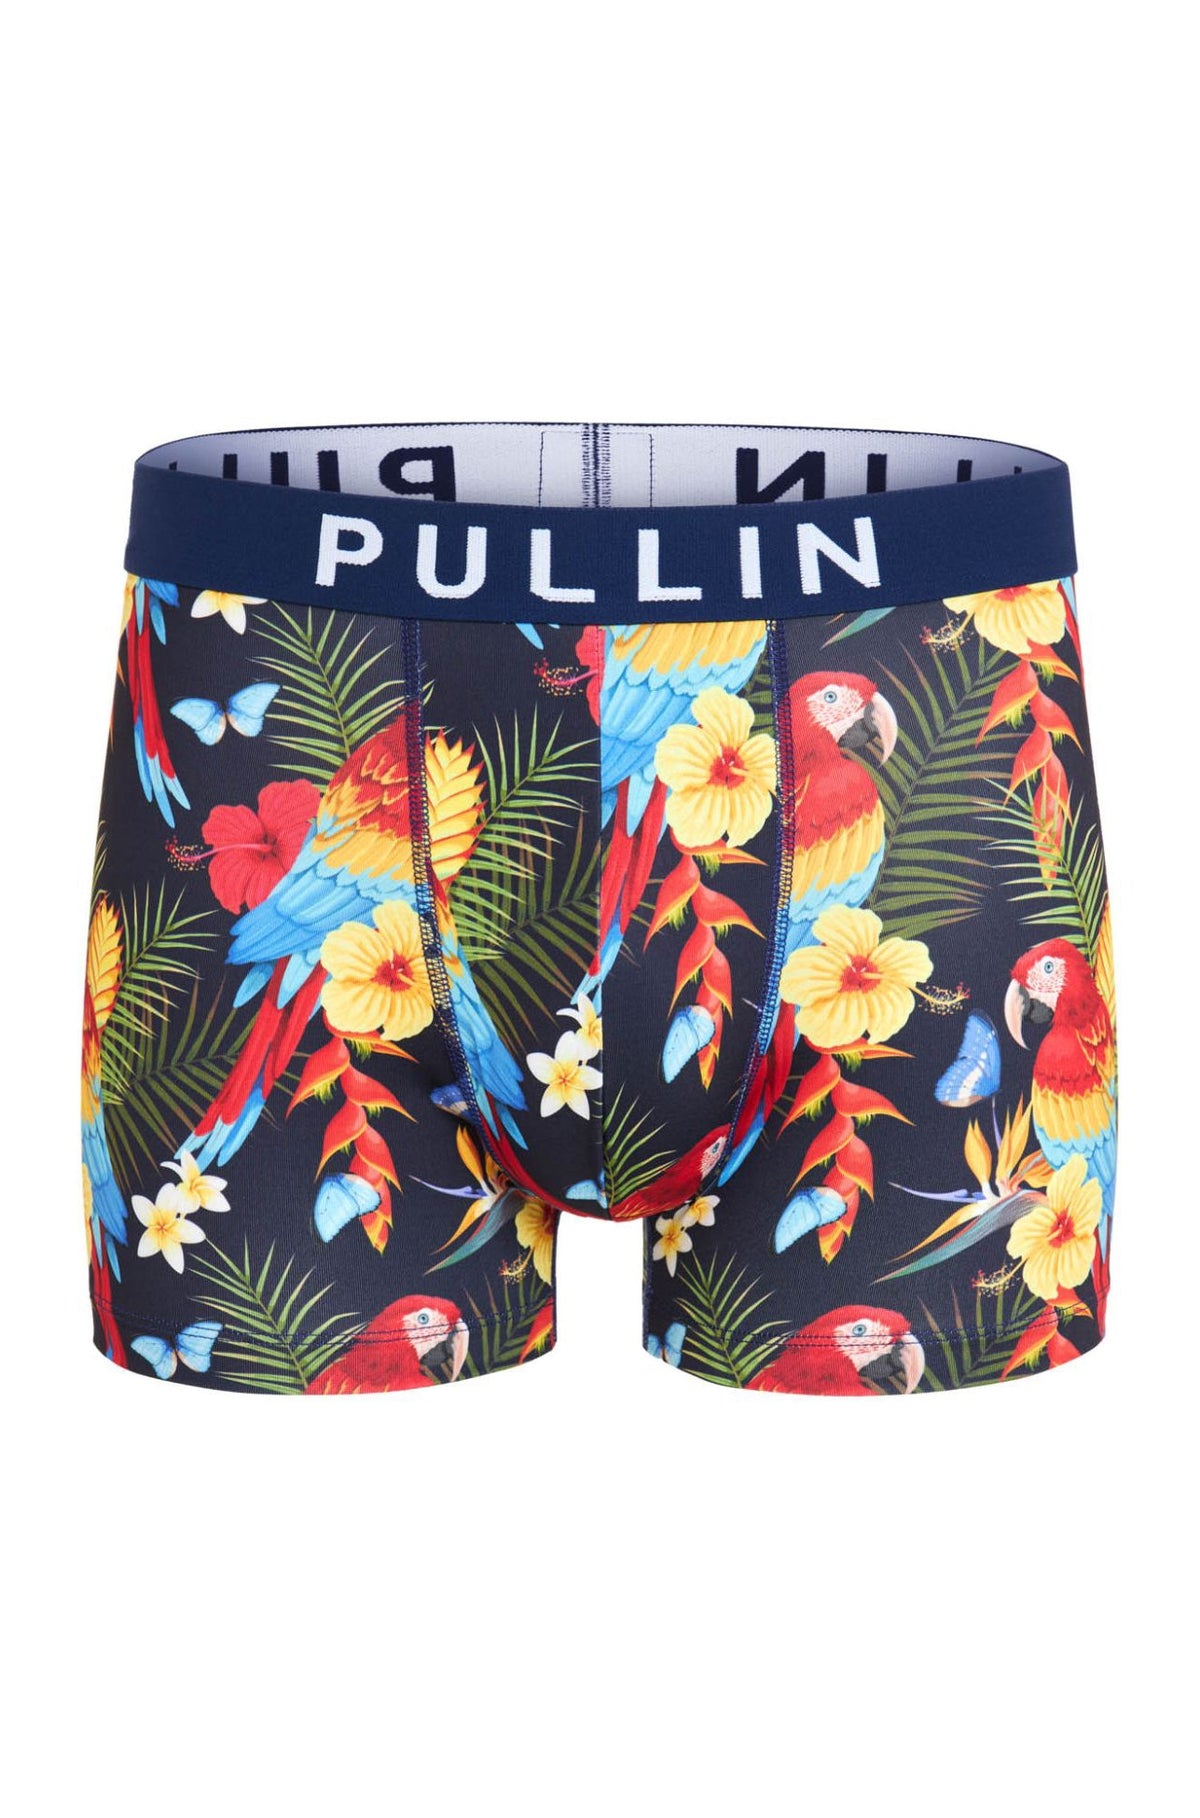 Boxers pour homme par Pullin | MAS COLOFULL | Boutique Vvög, vêtements mode pour homme et femme